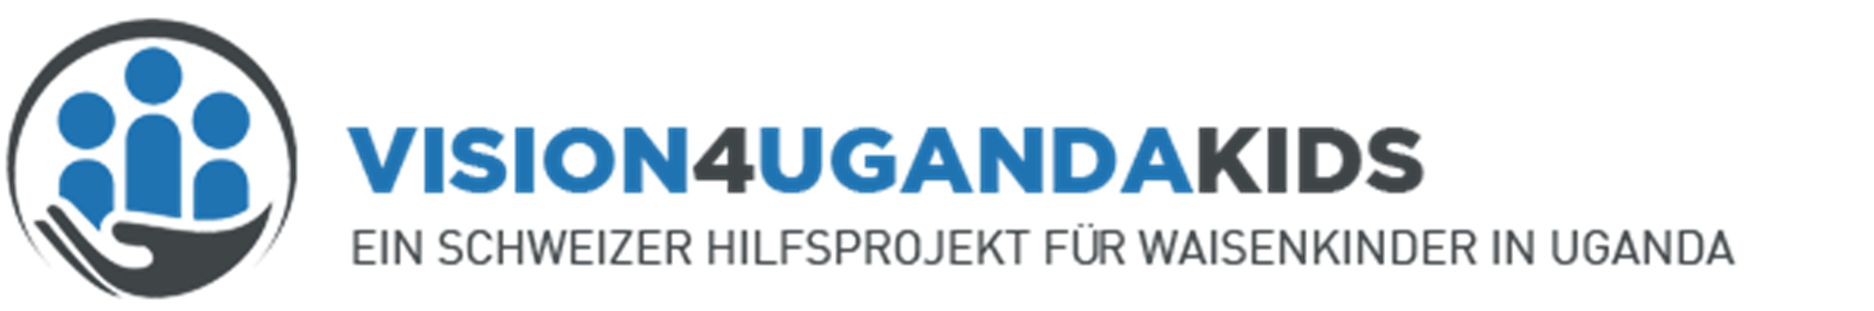 Logo Uganda - Vision 4 Uganda Kids.png